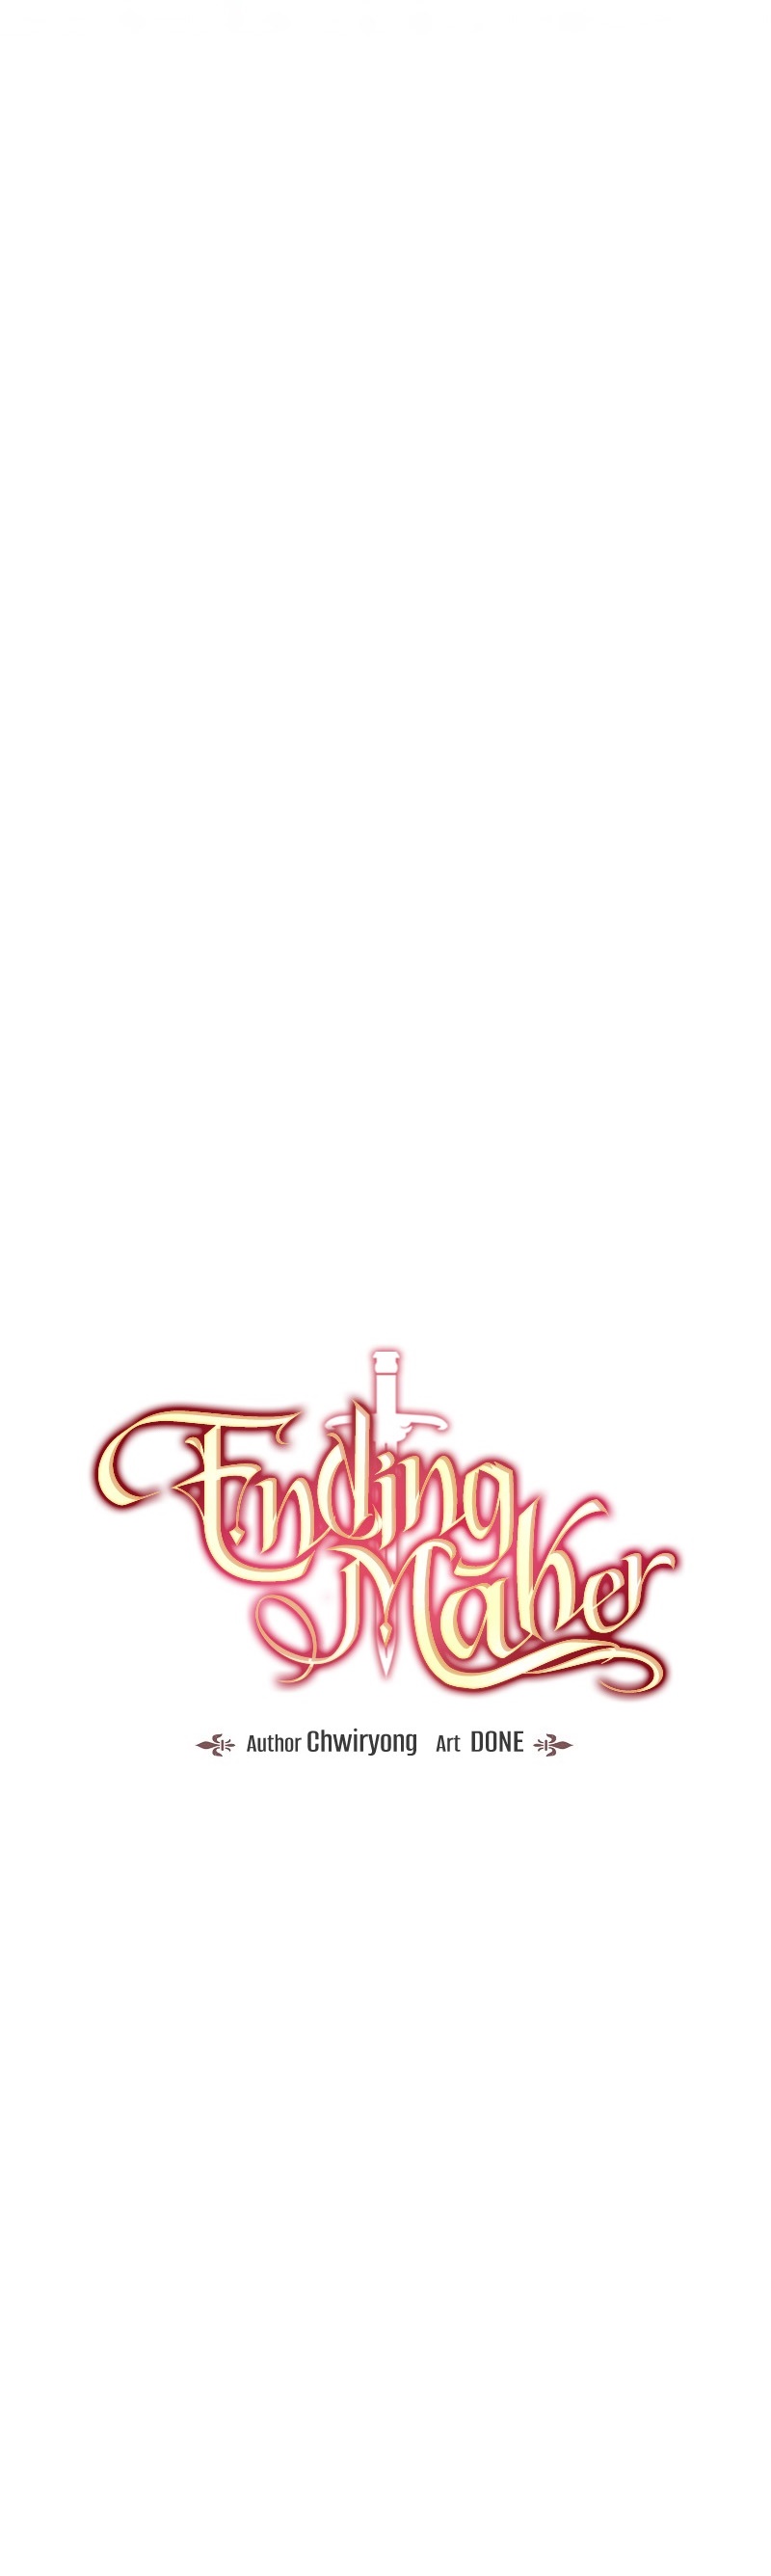 Ending Maker 19 08